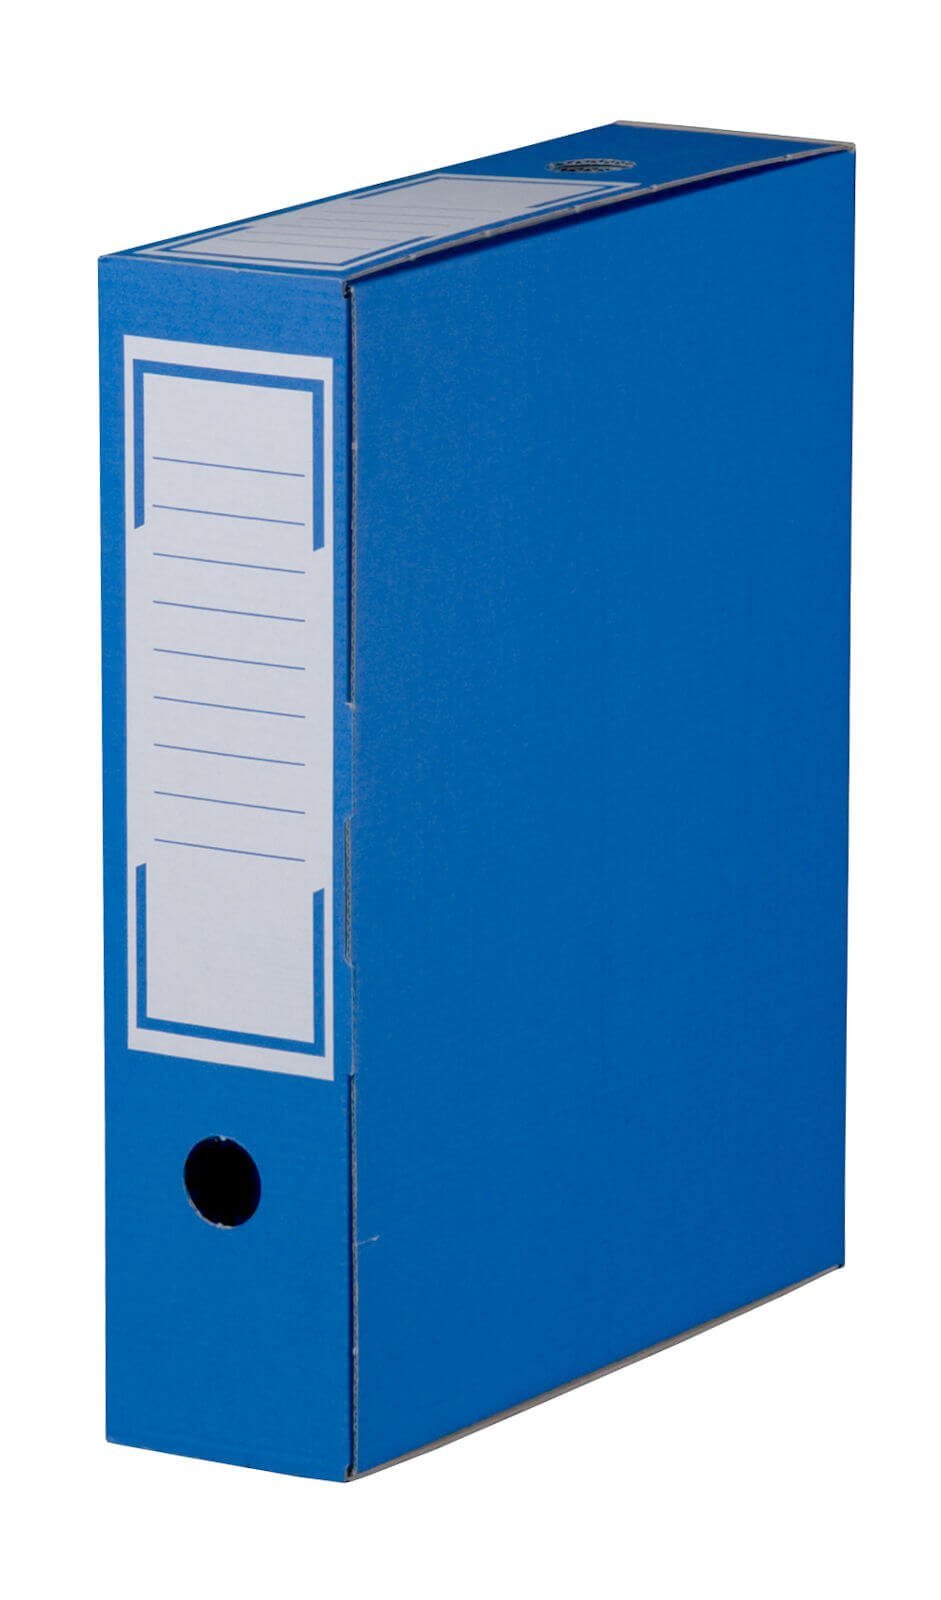 Praktische Archiv-Ablageboxen in Blau jetzt bestellen